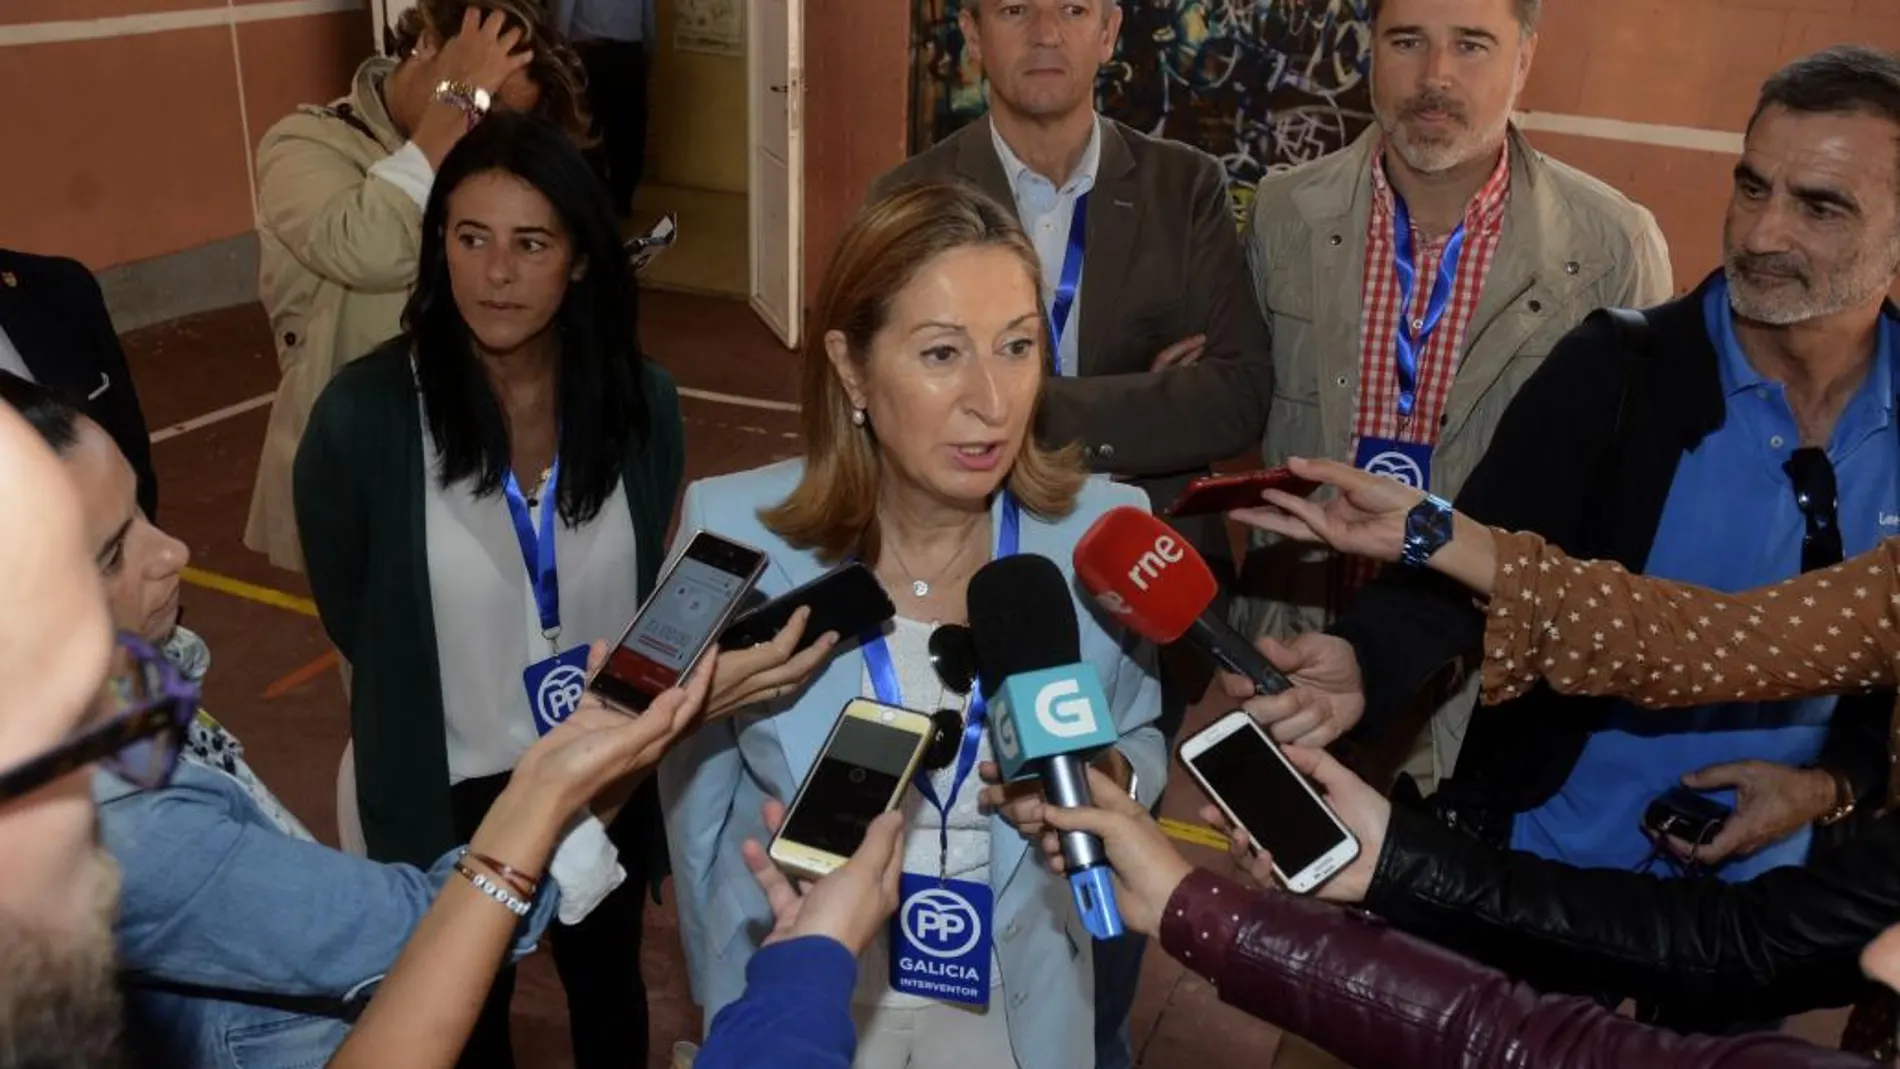 La presidenta del Congreso de los Diputados, Ana Pastor, atiende a los medios tras ejercer su derecho al voto en las elecciones gallegas.